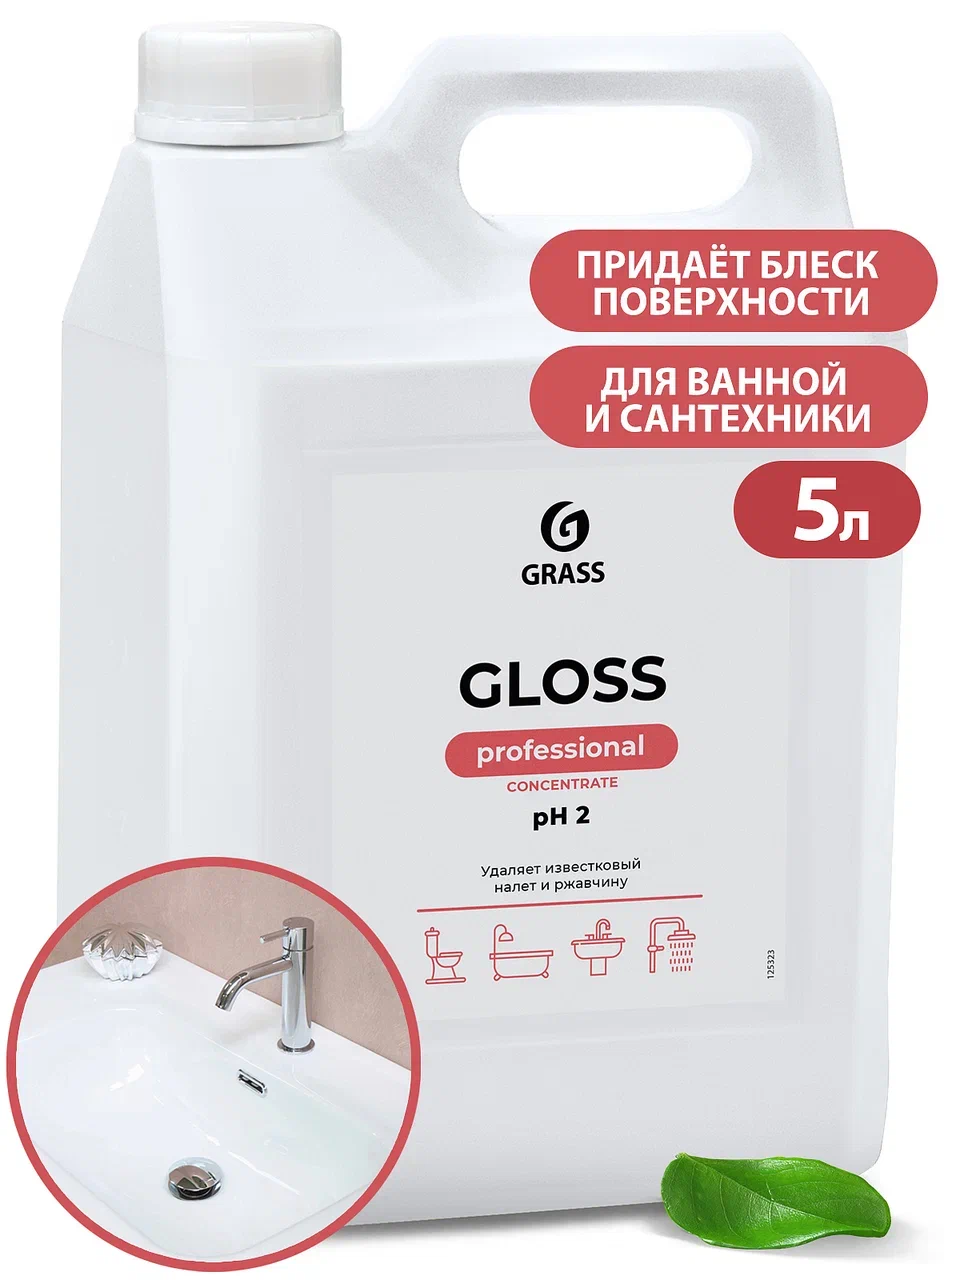 Концентрированное чистящее средство Gloss Concentrate, 5,5 кг